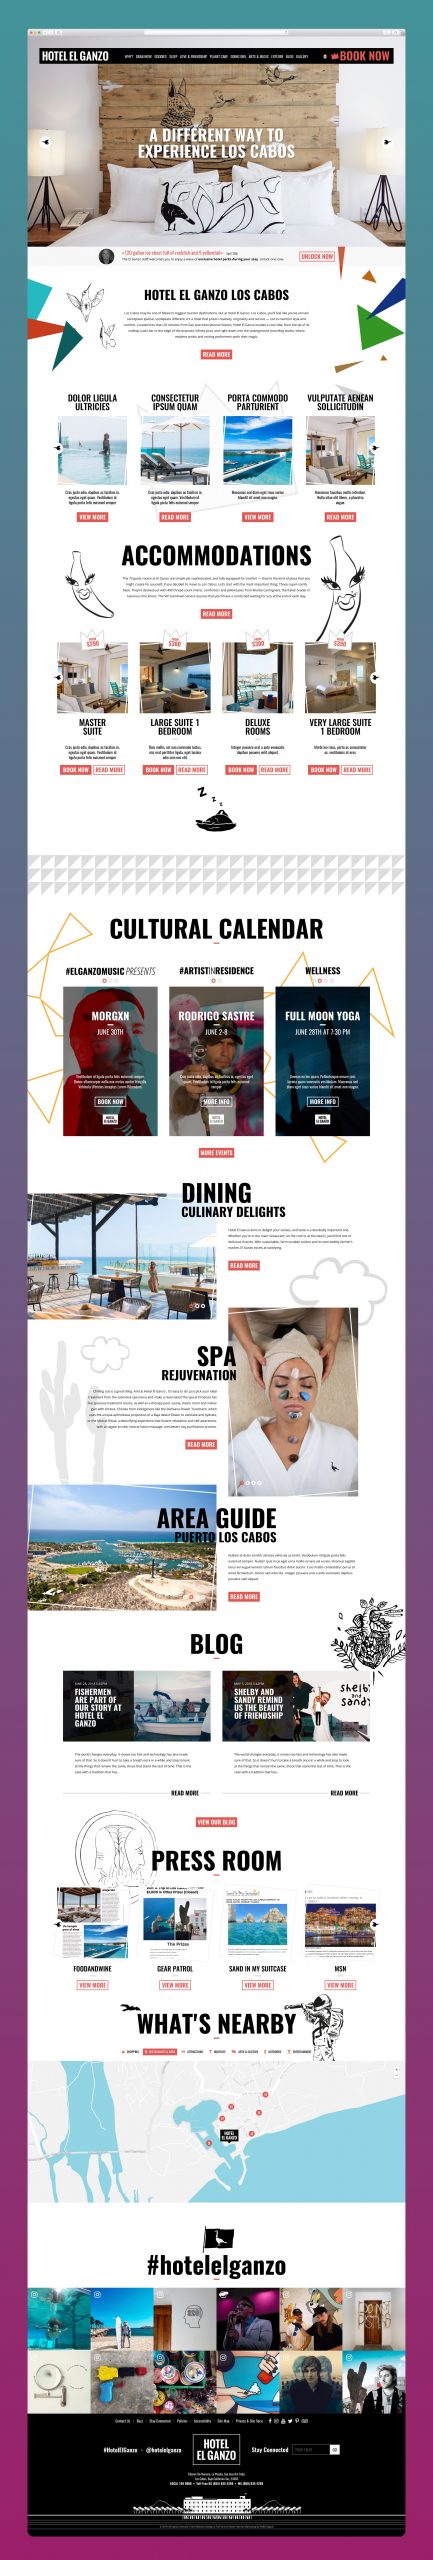 El Ganzo – Art Hotel Web Design